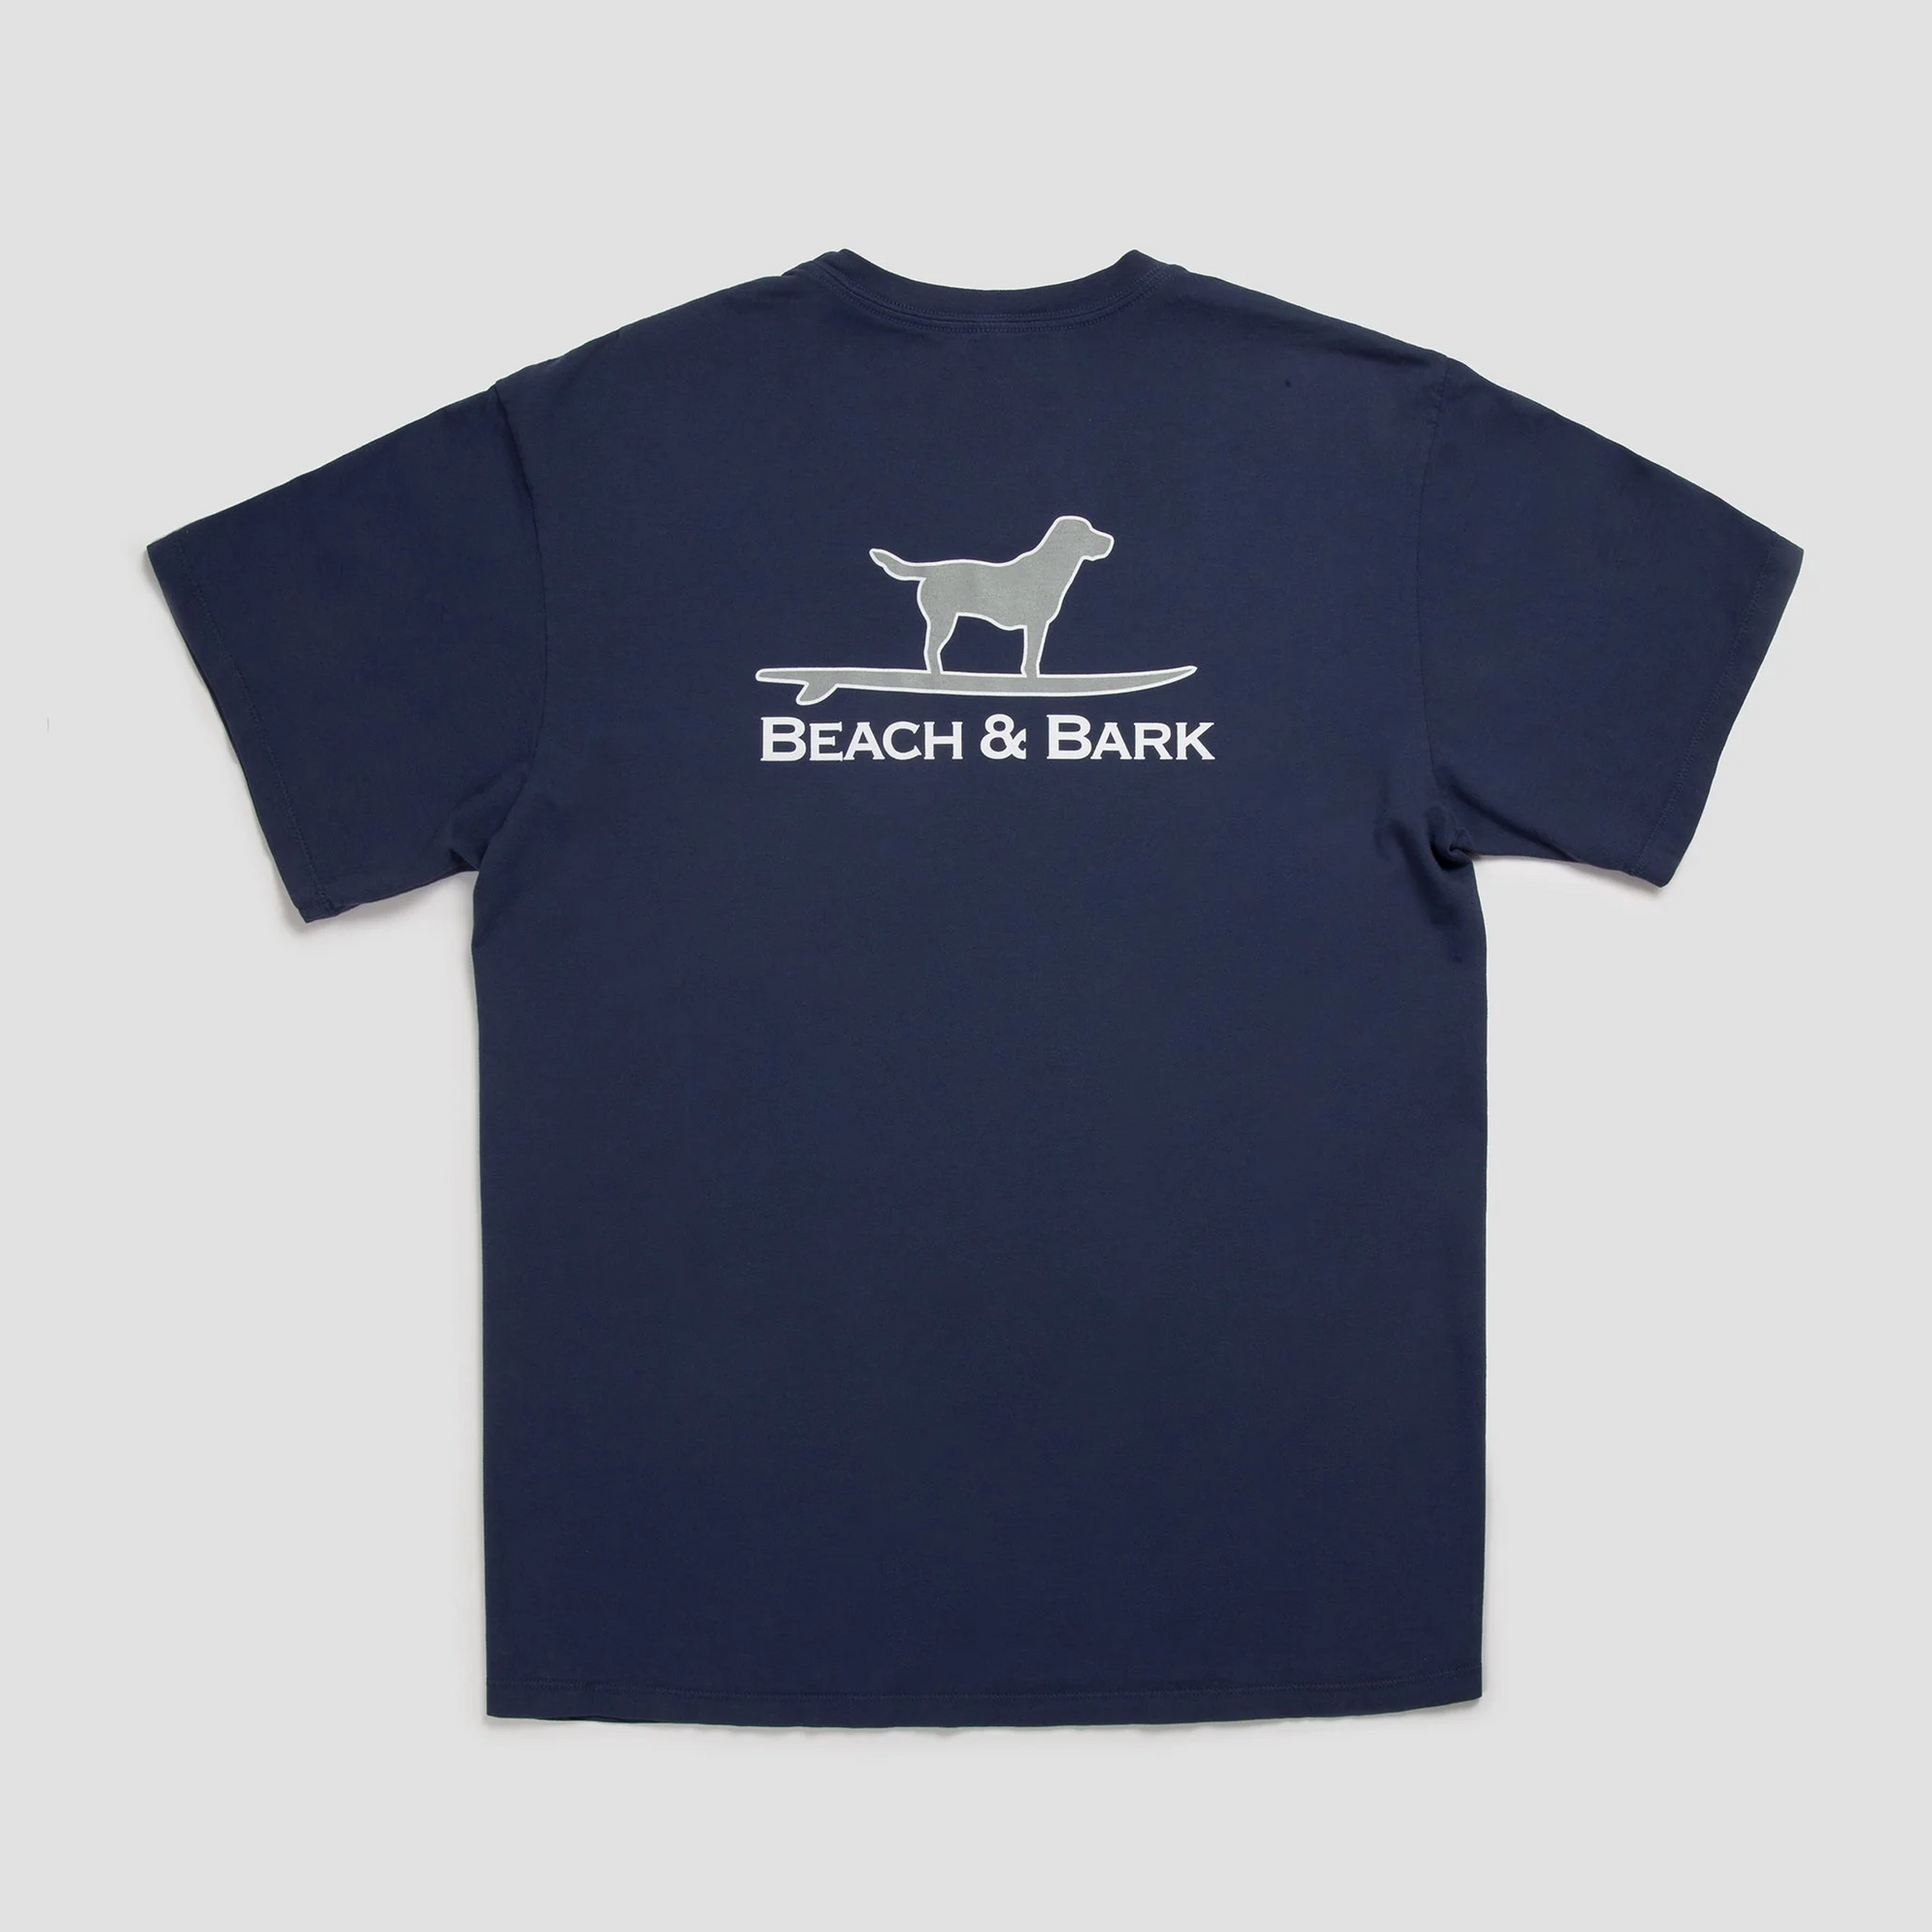 Sale - Beach & Bark Tee Shirt